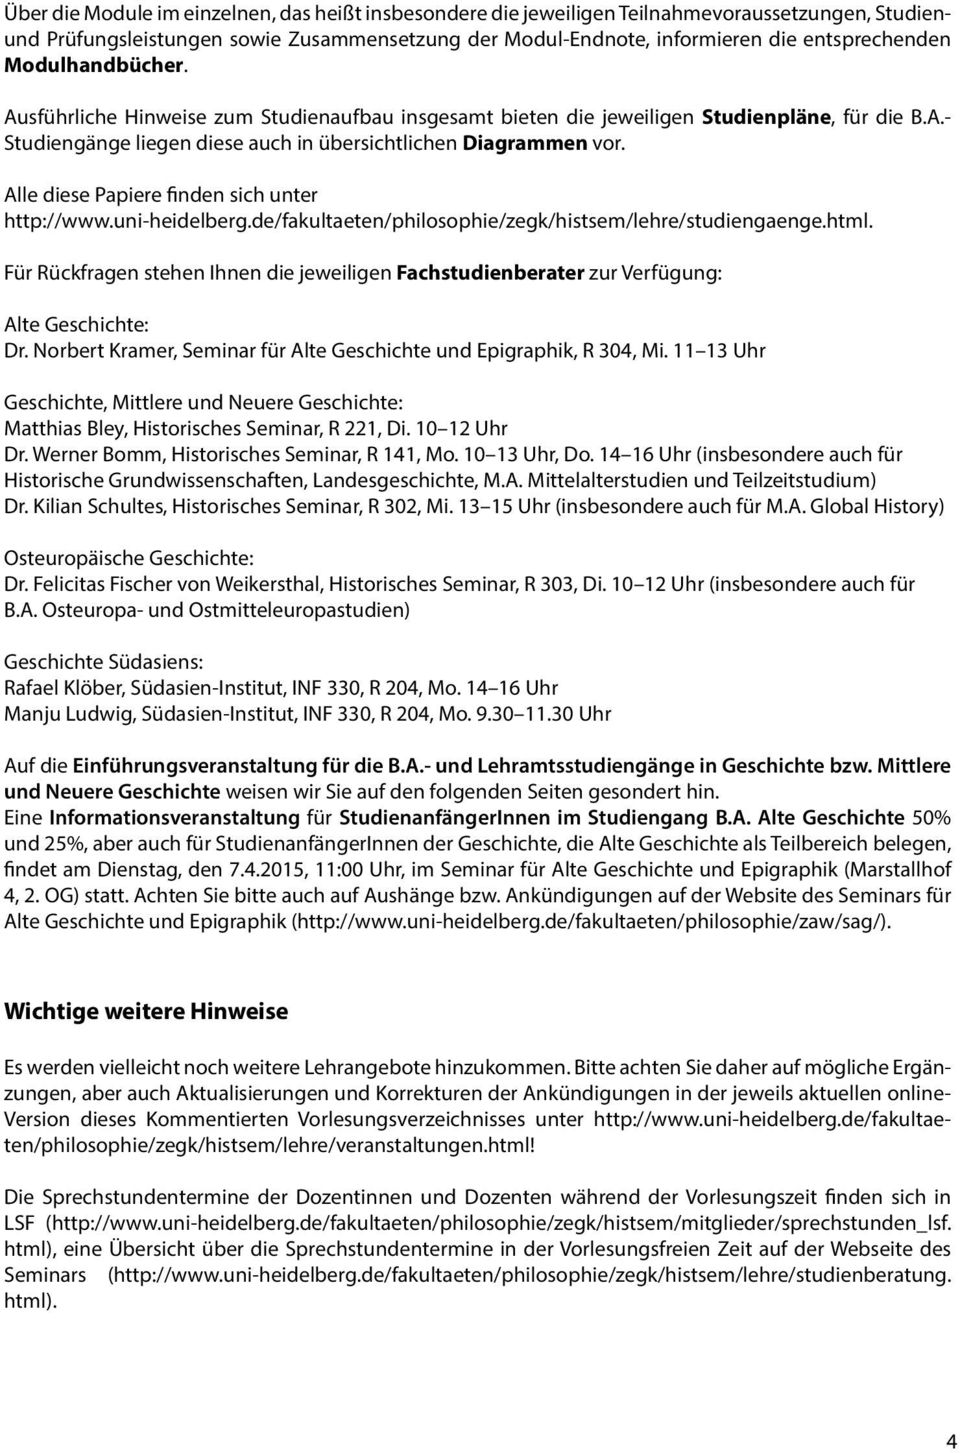 Alle diese Papiere finden sich unter http://www.uni-heidelberg.de/fakultaeten/philosophie/zegk/histsem/lehre/studiengaenge.html.